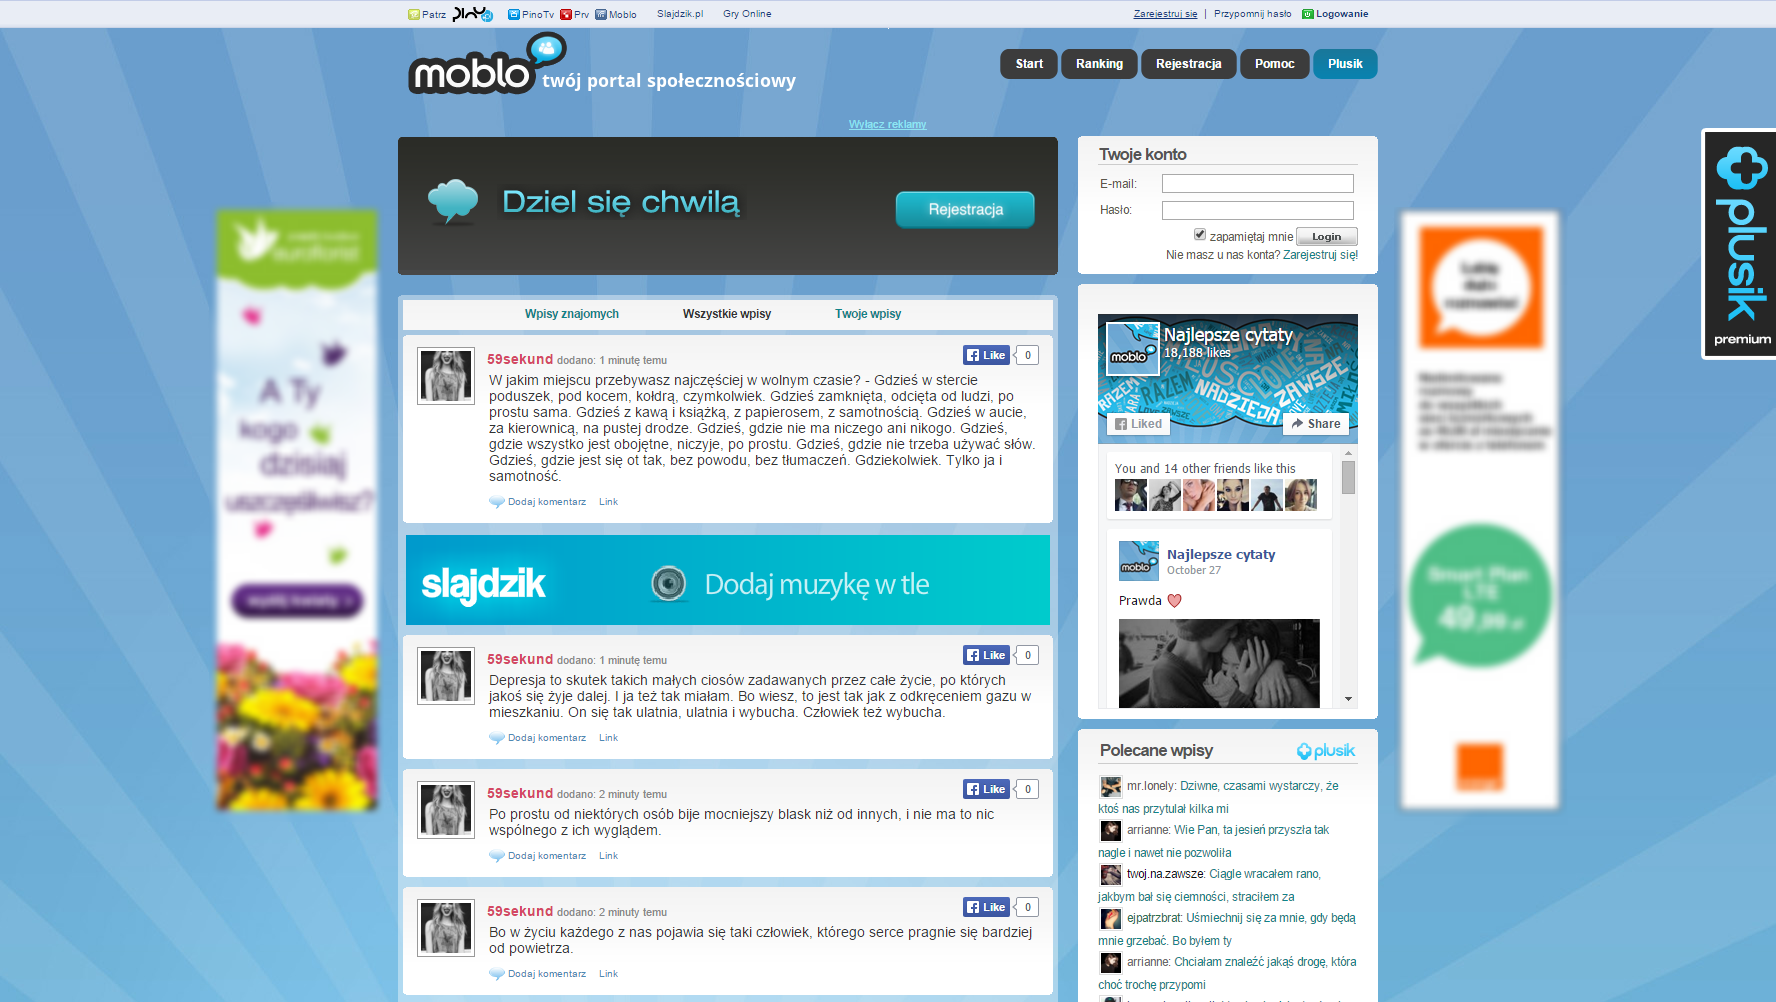 Project Moblo.pl